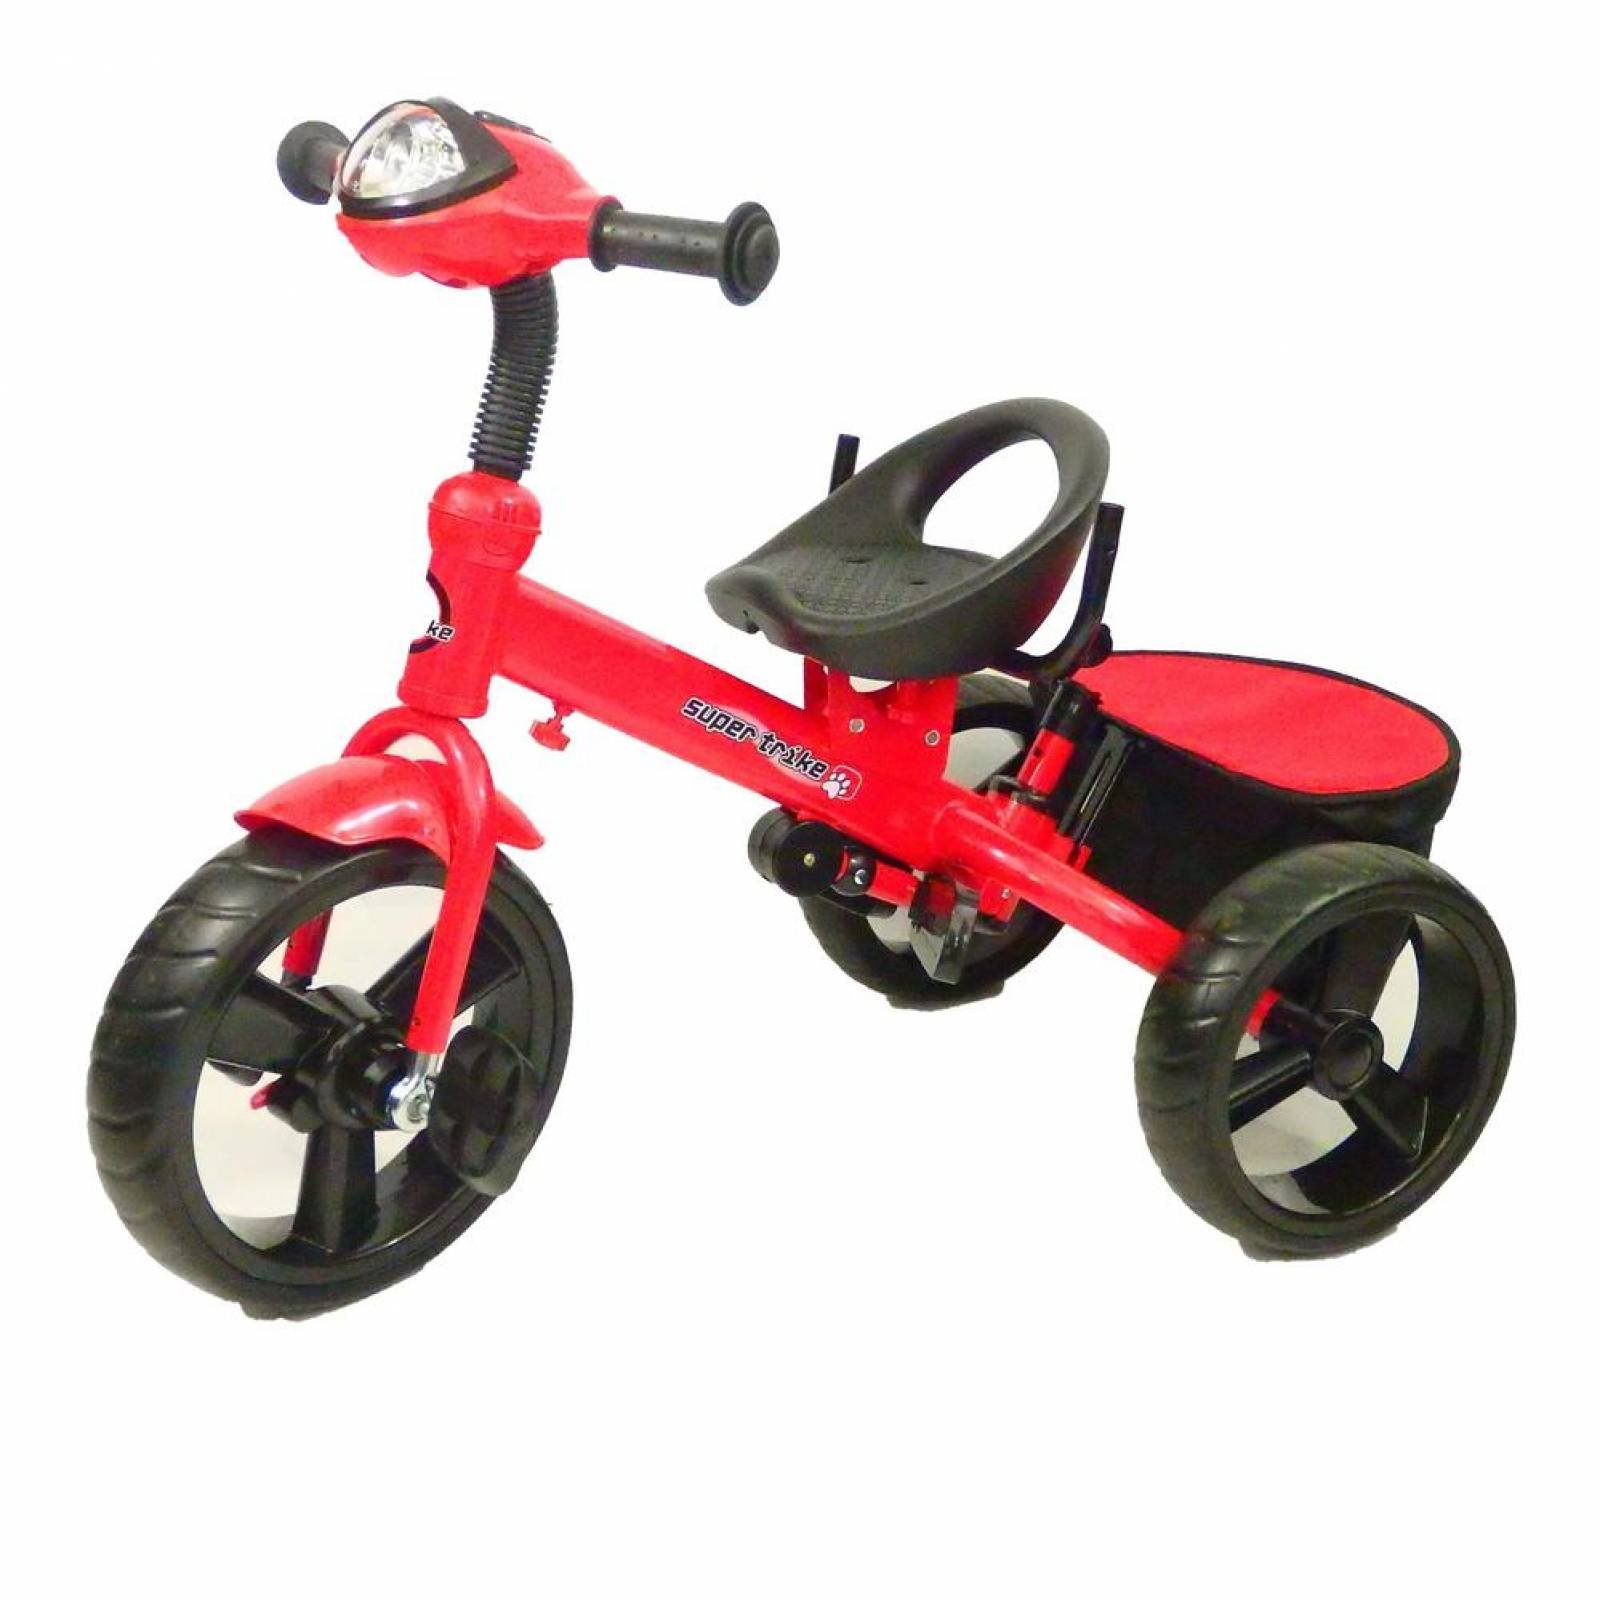 Triciclo para Bebe Niños 6 en 1 6 meses a 5 años  - Rojo